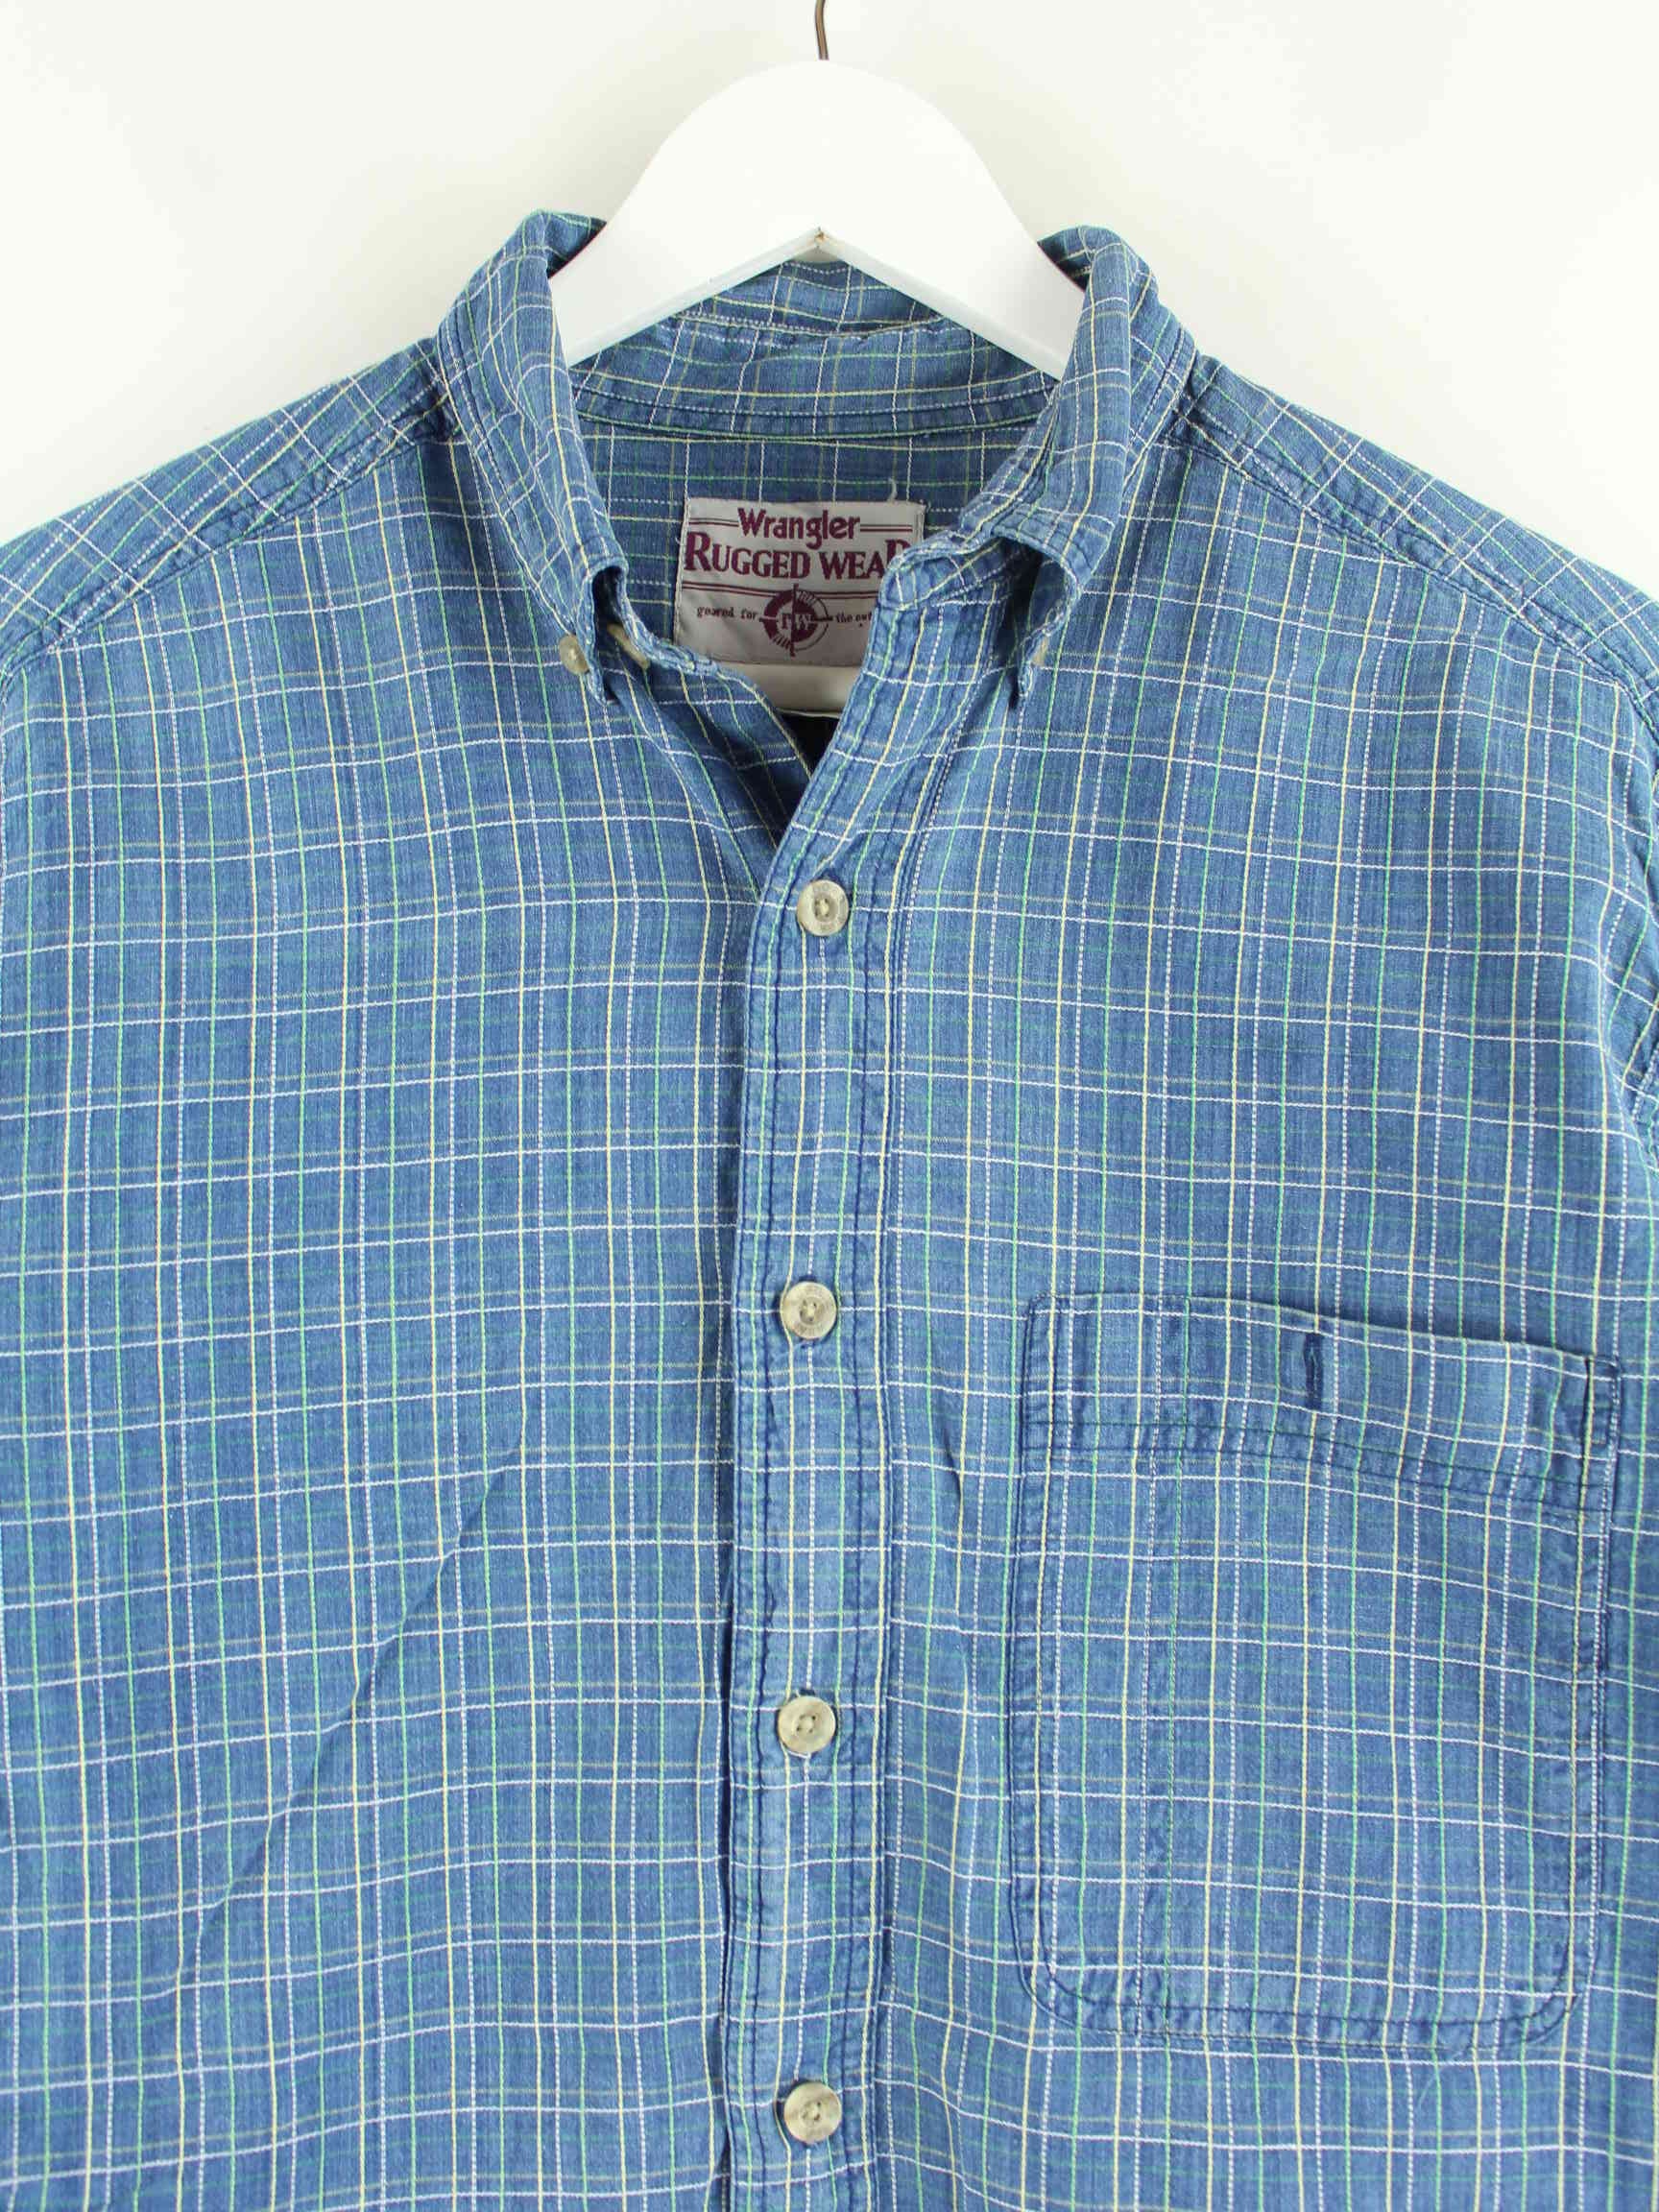 Wrangler 90s Vintage Rugged Wear Hemd Blau L (detail image 1)